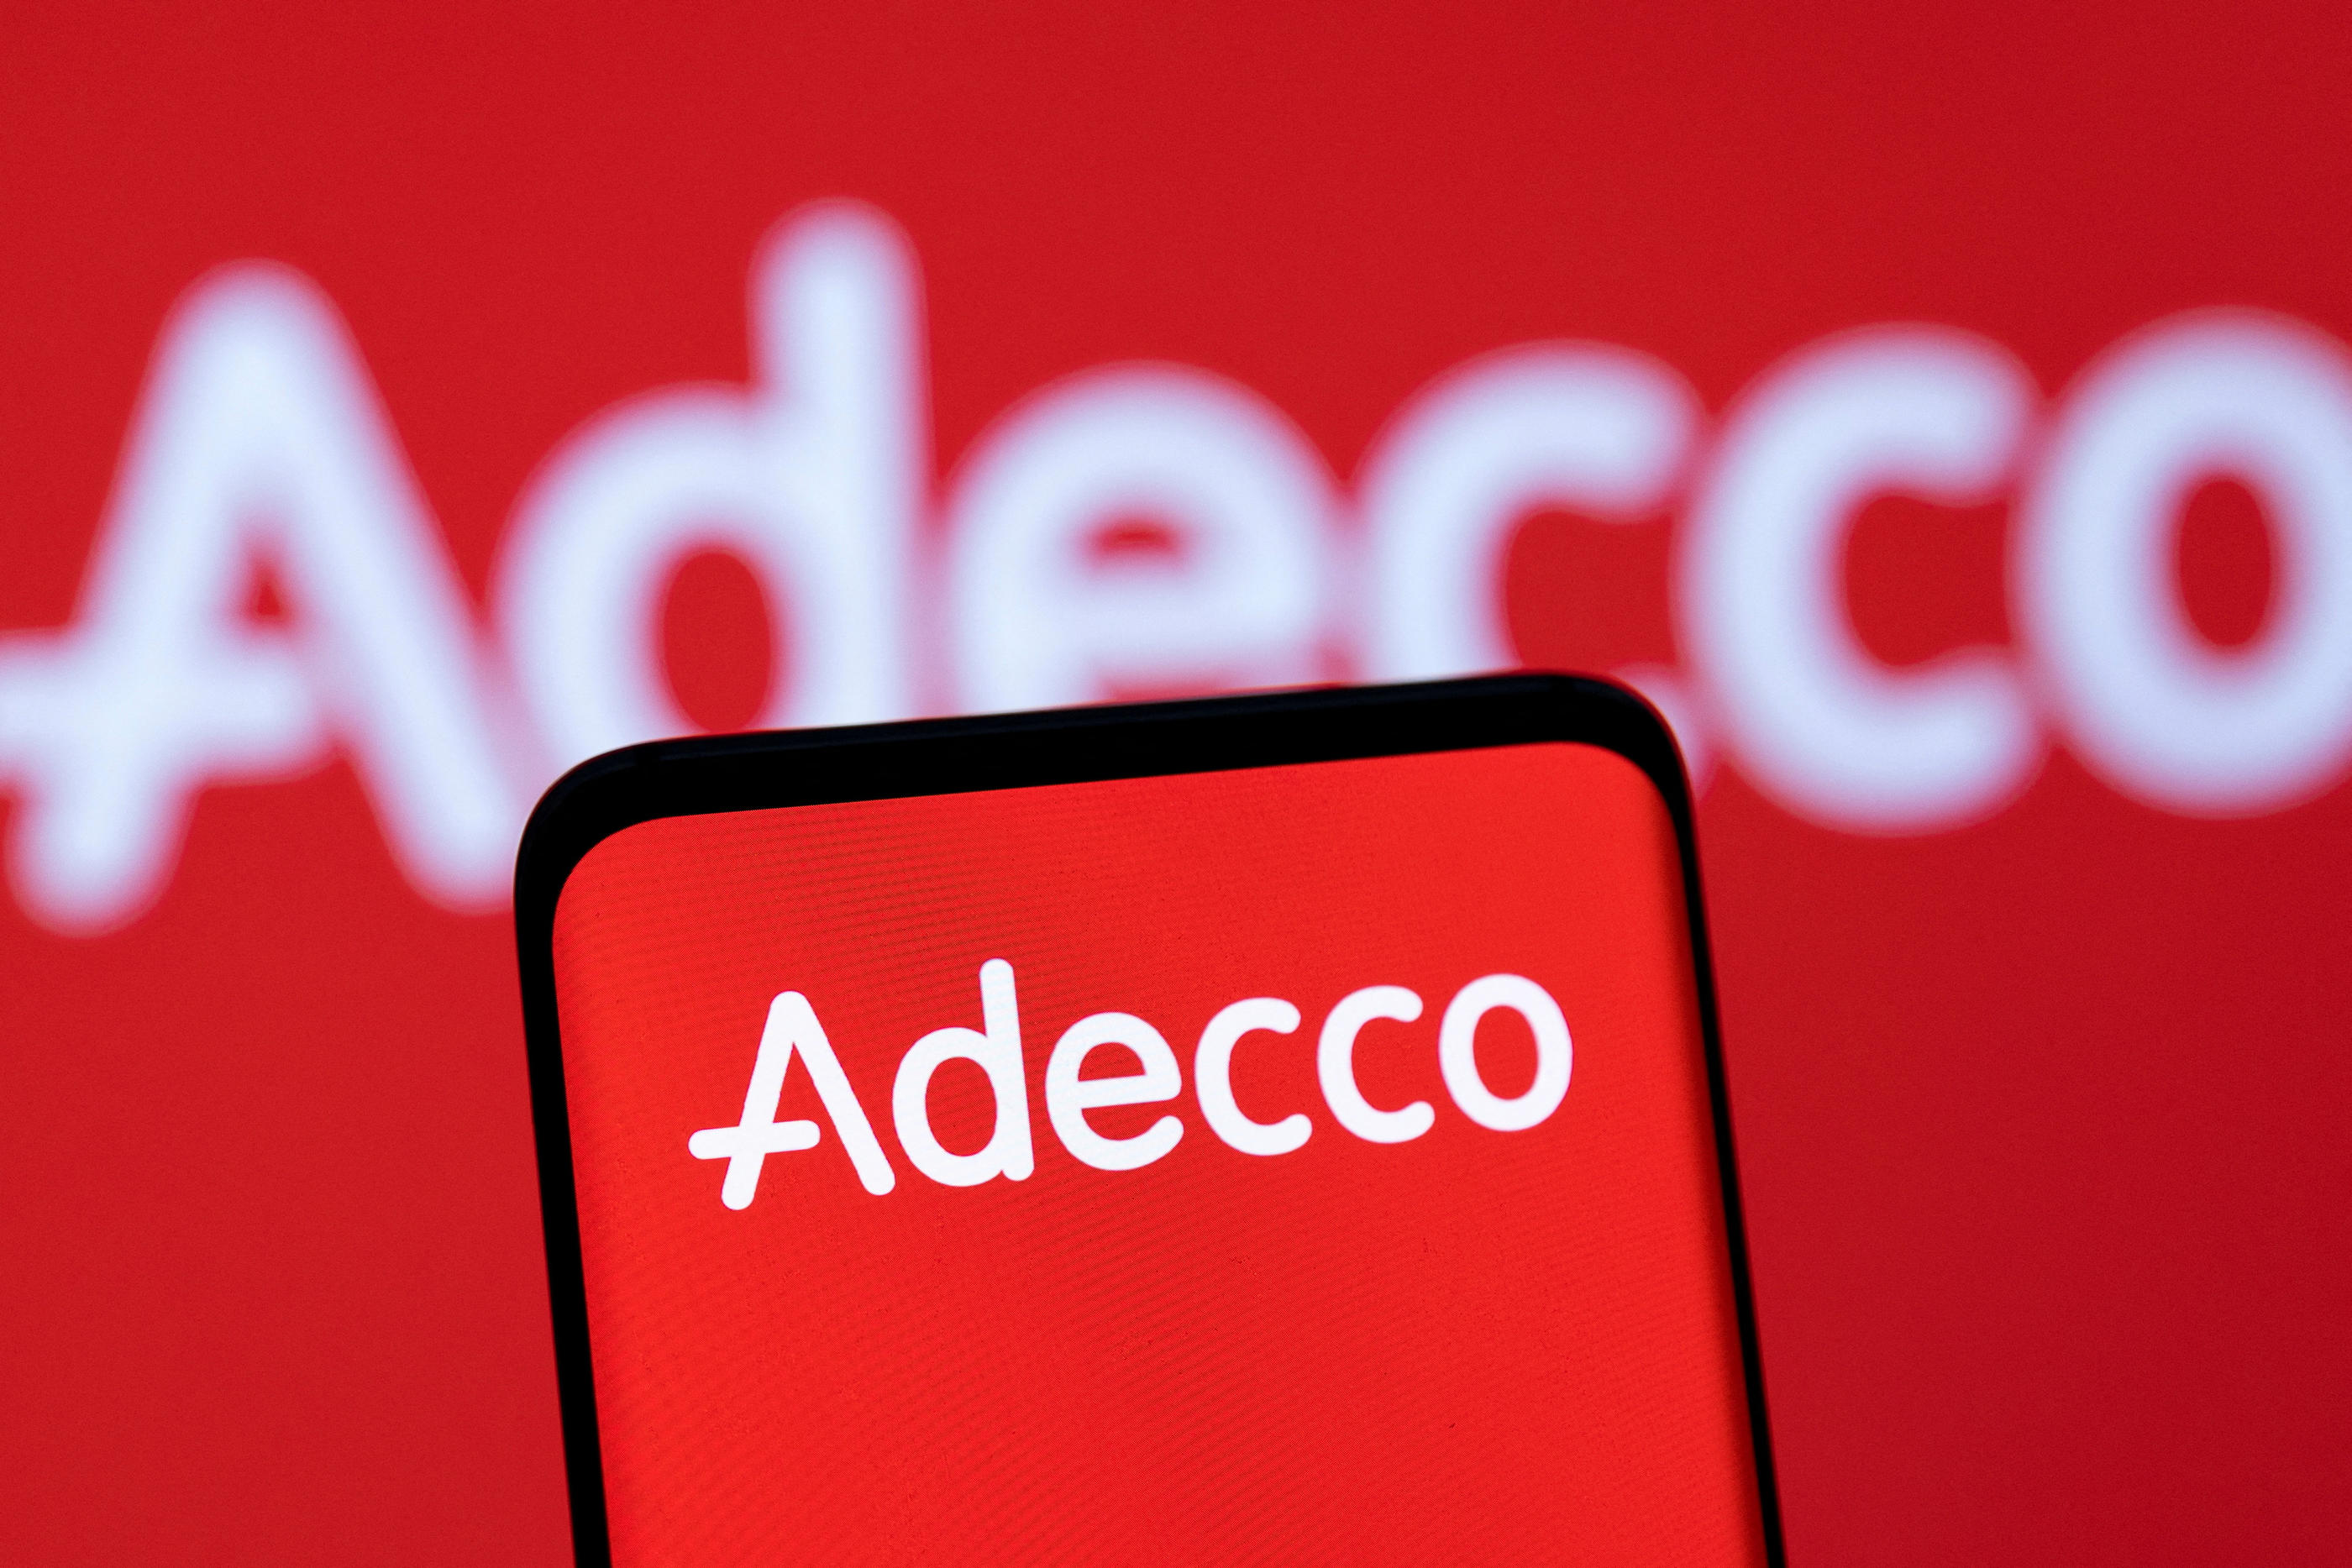 Déjà condamné pour discrimination à l’embauche en 2007, le groupe Adecco affrontera un nouveau procès à partir du 28 septembre. Reuters/Dado Ruvic